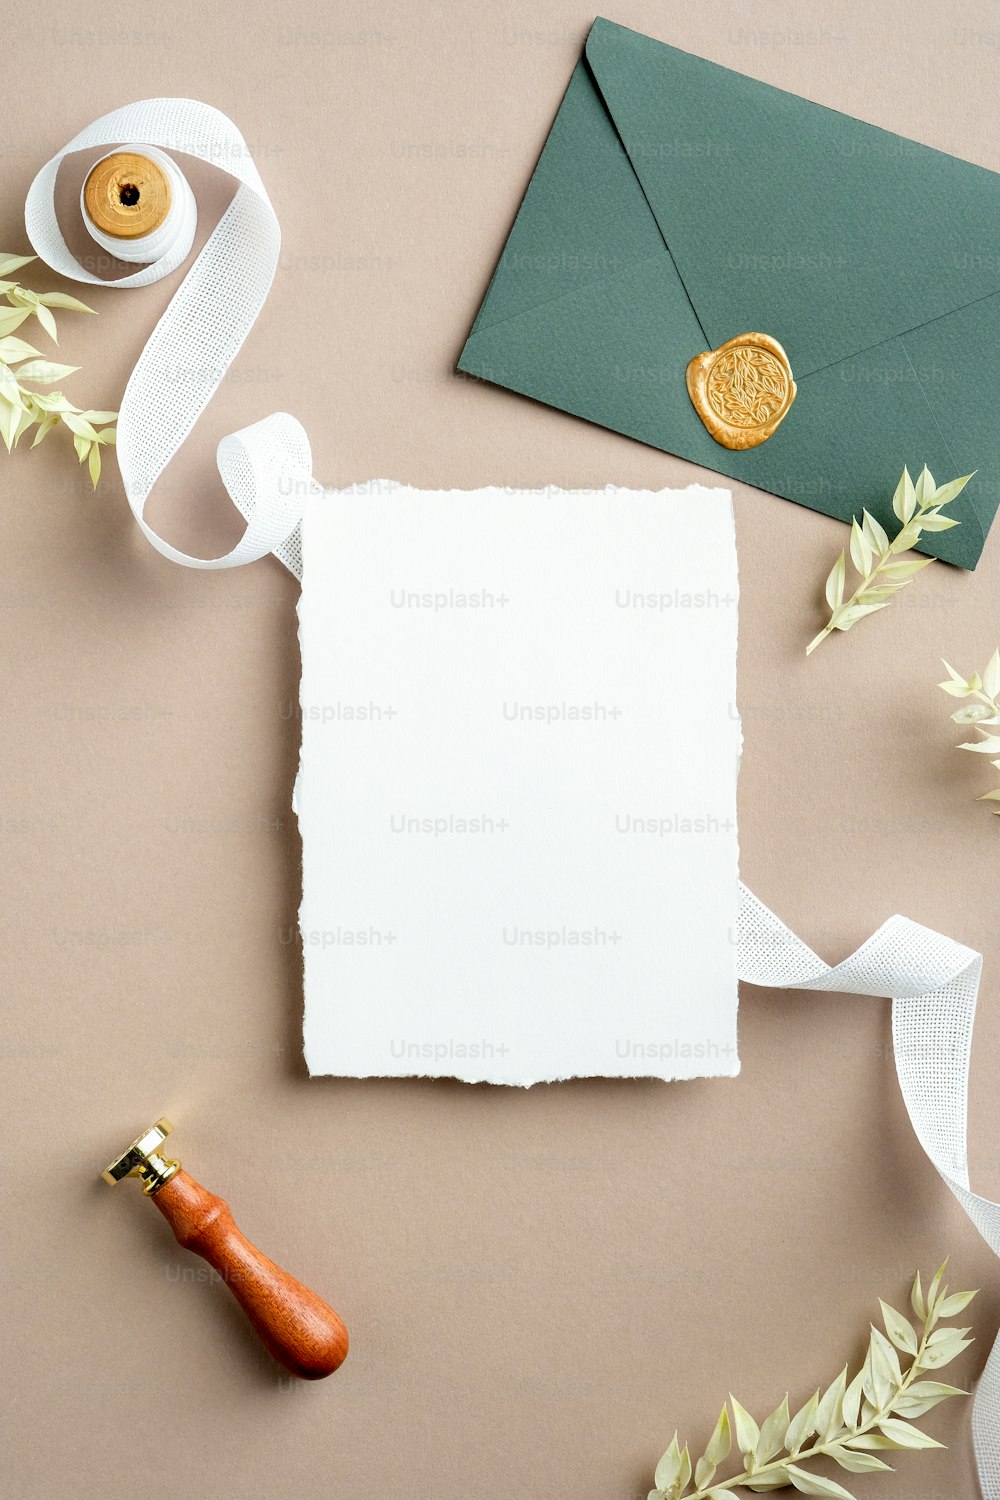 Feuille de papier déchirée, ruban de soie, enveloppe verte avec cachet de cire, fleurs séchées sur fond beige pastel. Modèle de carte d’invitation de mariage. Mise à plat, vue de dessus, espace de copie.